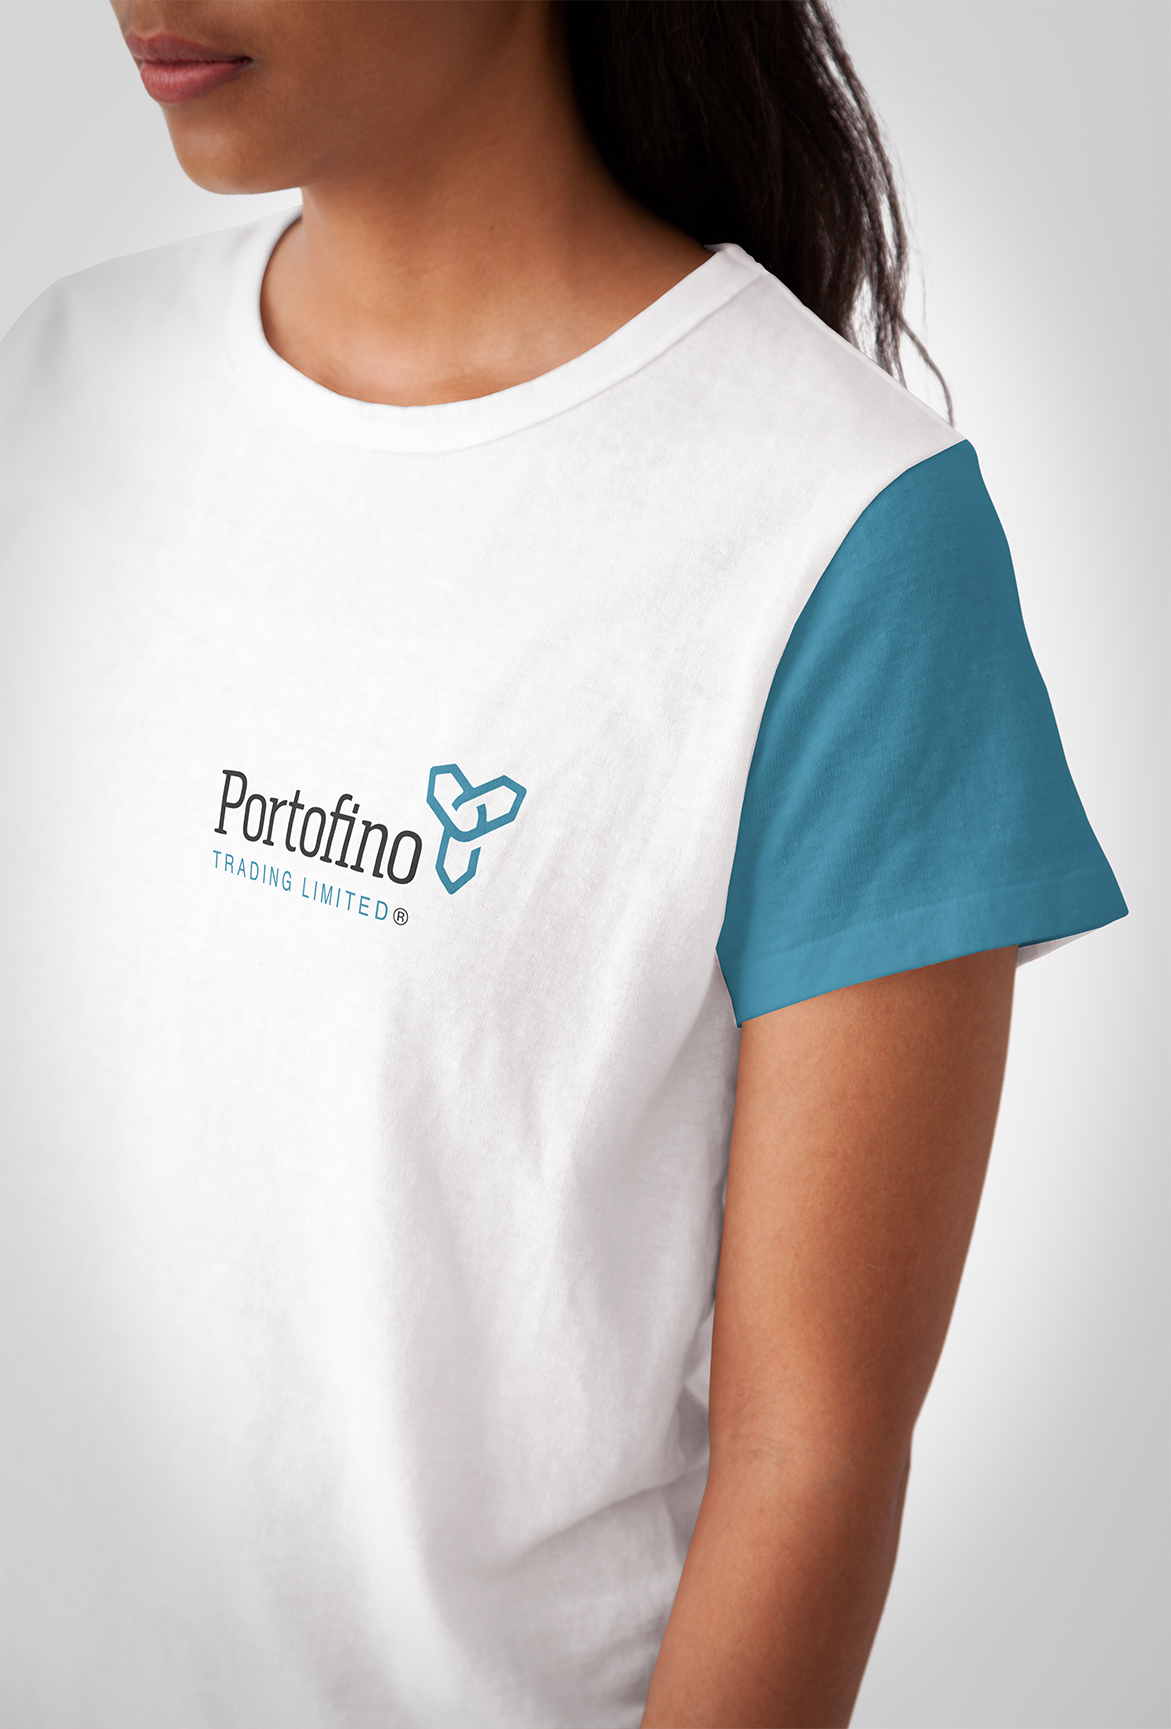 Portofino Trading Logo on tshirt